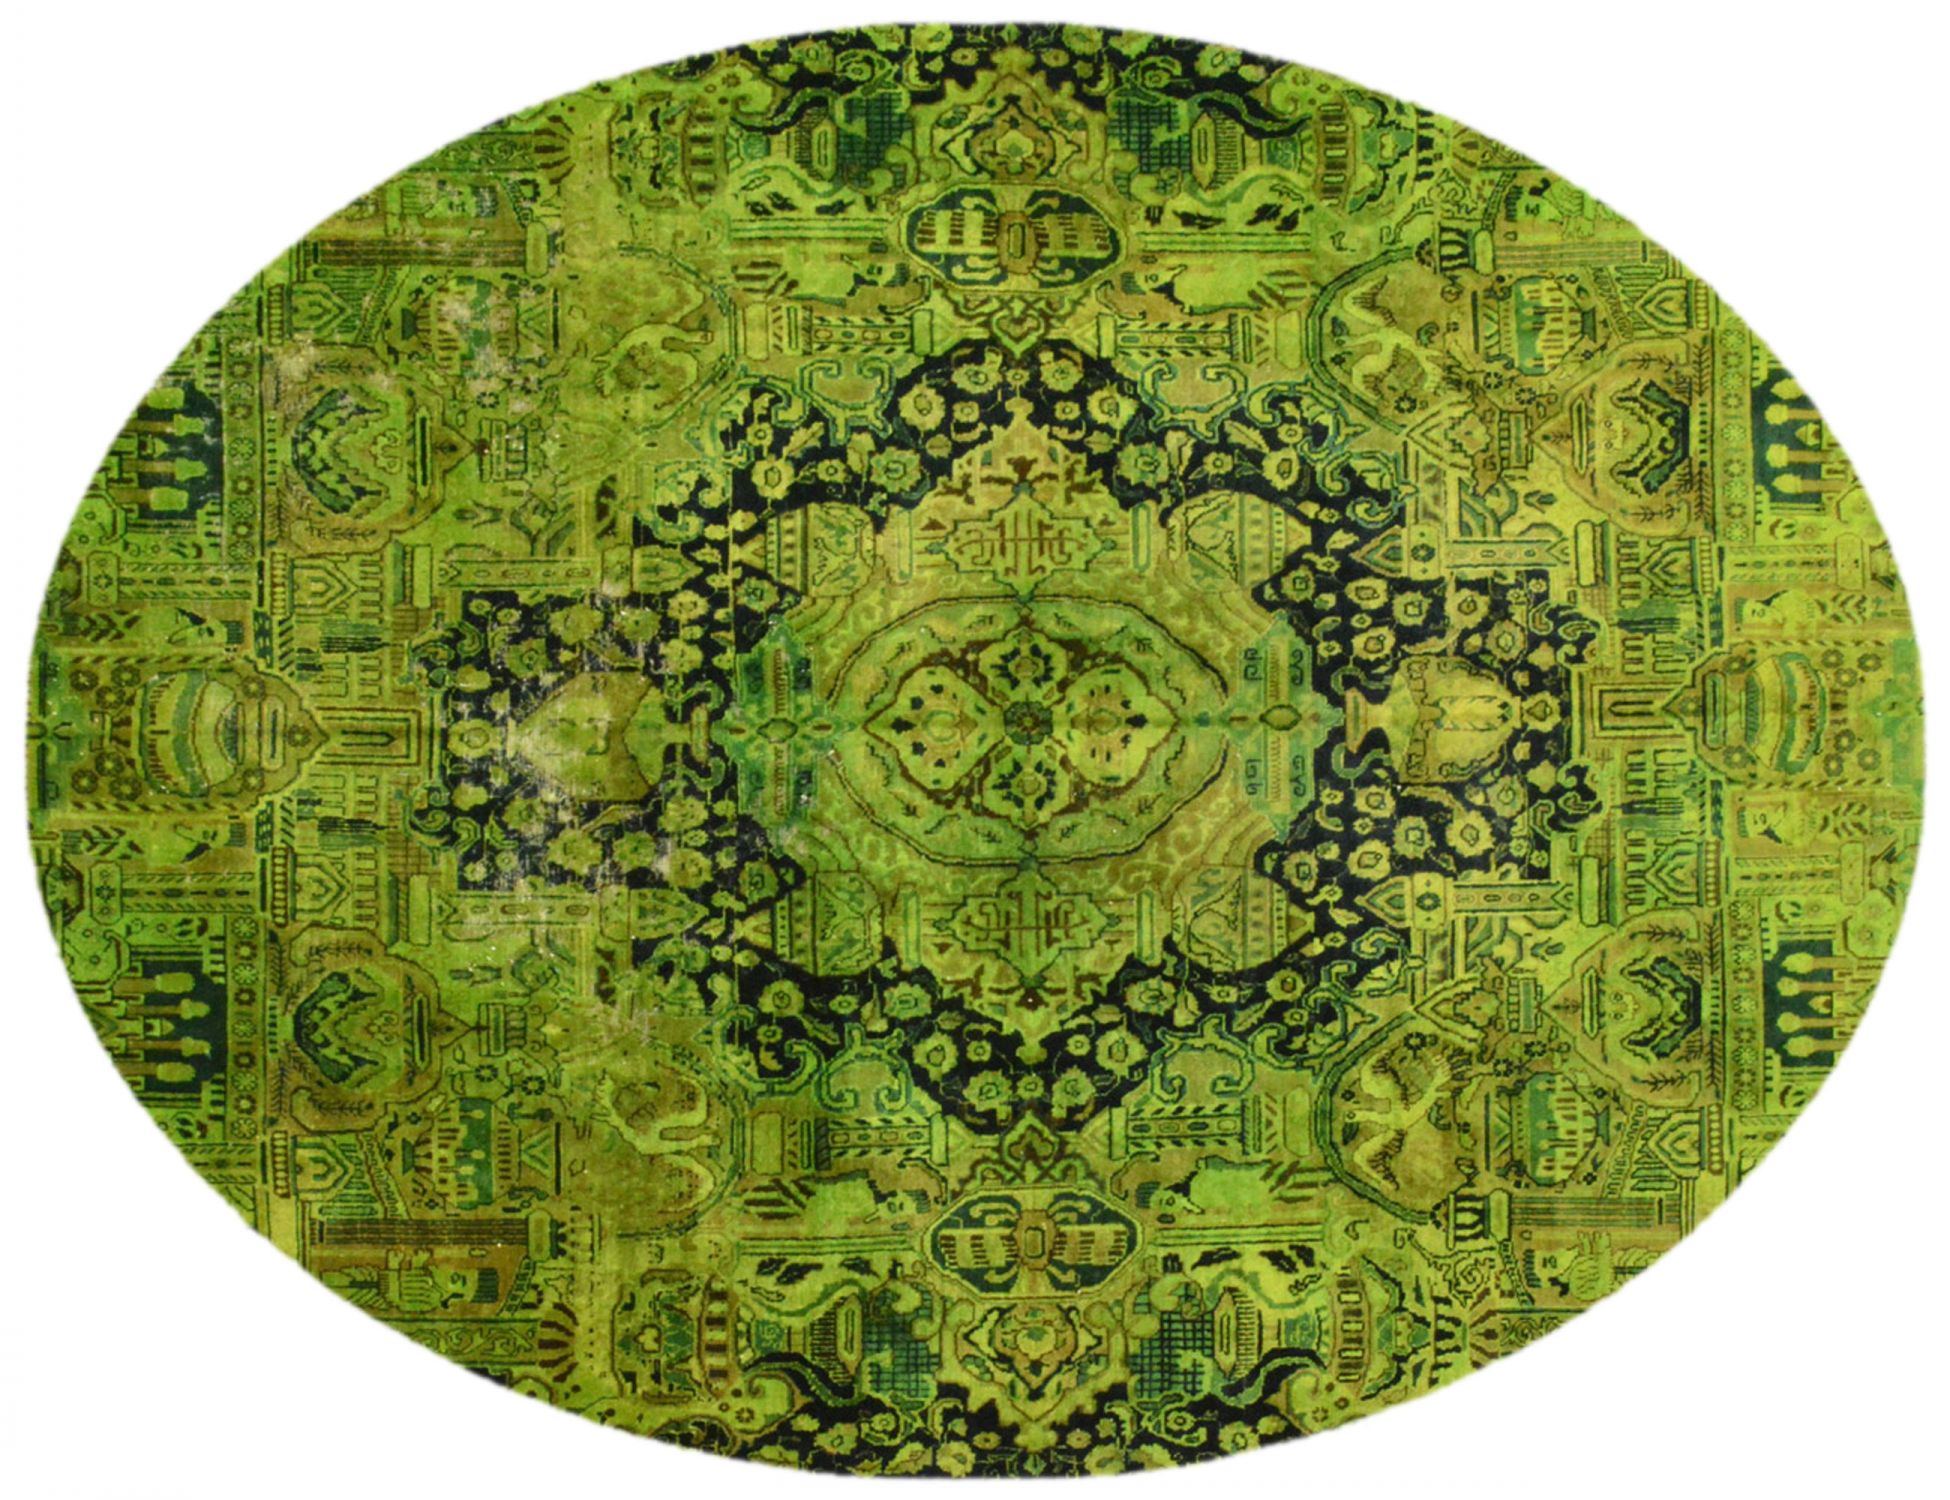 Vintage Teppich  grün <br/>342 x 276 cm